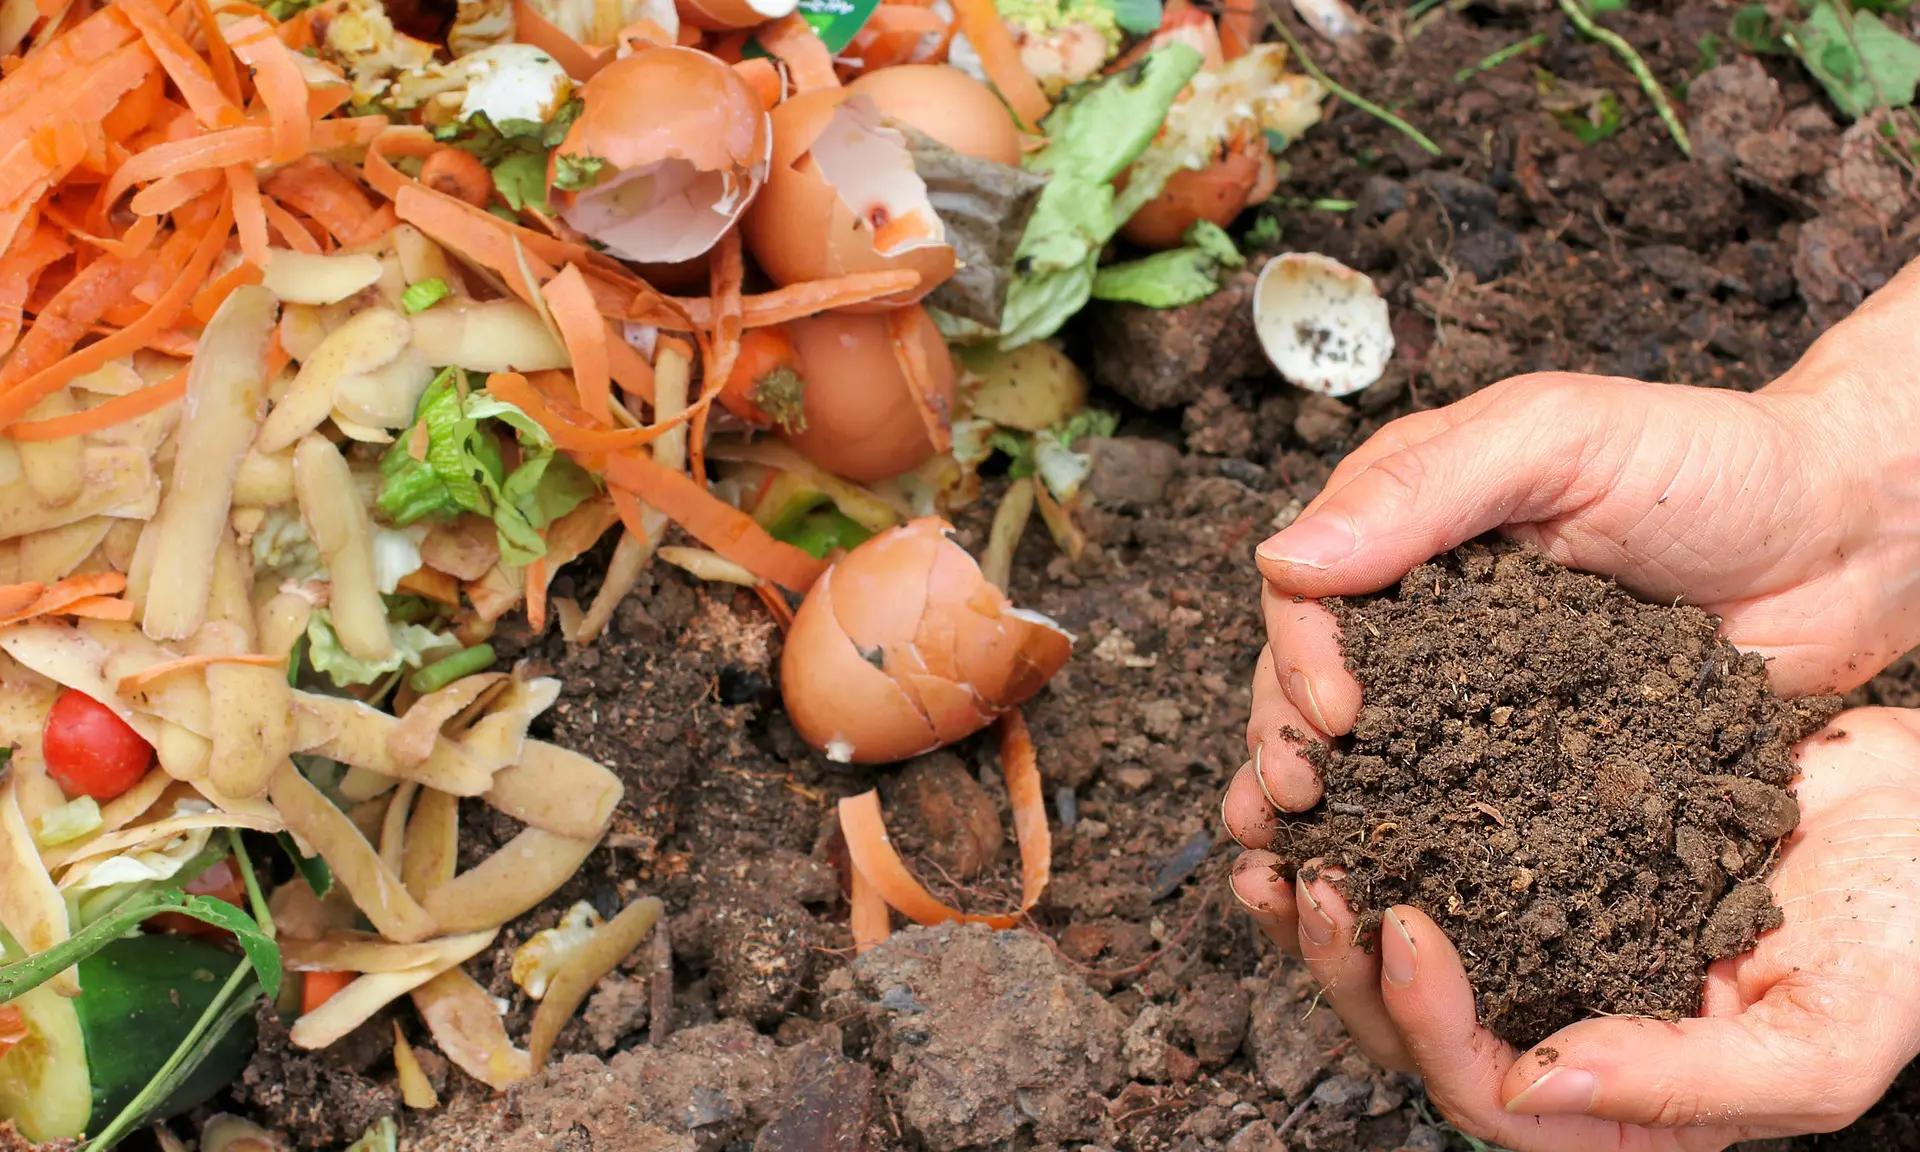 Comuna do Chile pratica lixo zero com resíduos vegetais - eCycle